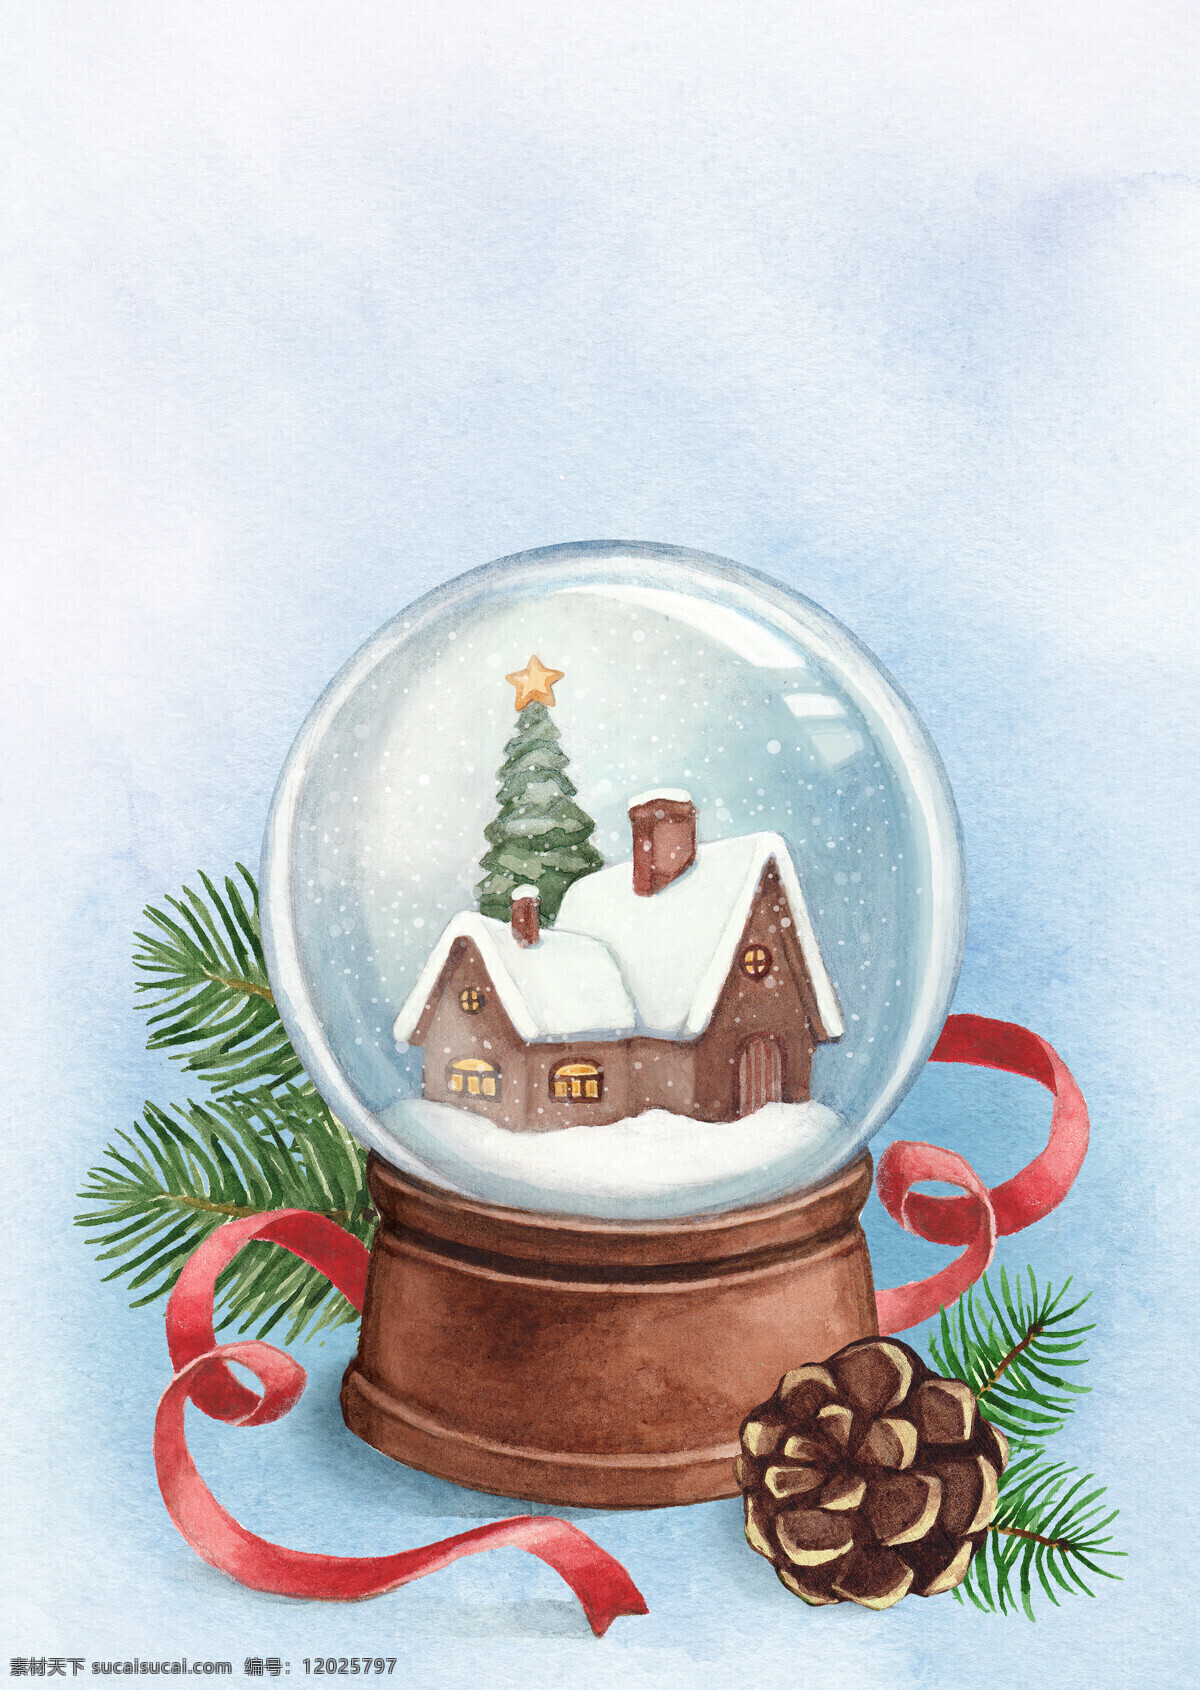 背景 绘画 绘画书法 节日 平安夜 圣诞节 圣诞树 圣诞 水晶球 设计素材 模板下载 圣诞水晶球 雪花 特效 下雪特效 手绘 文化艺术